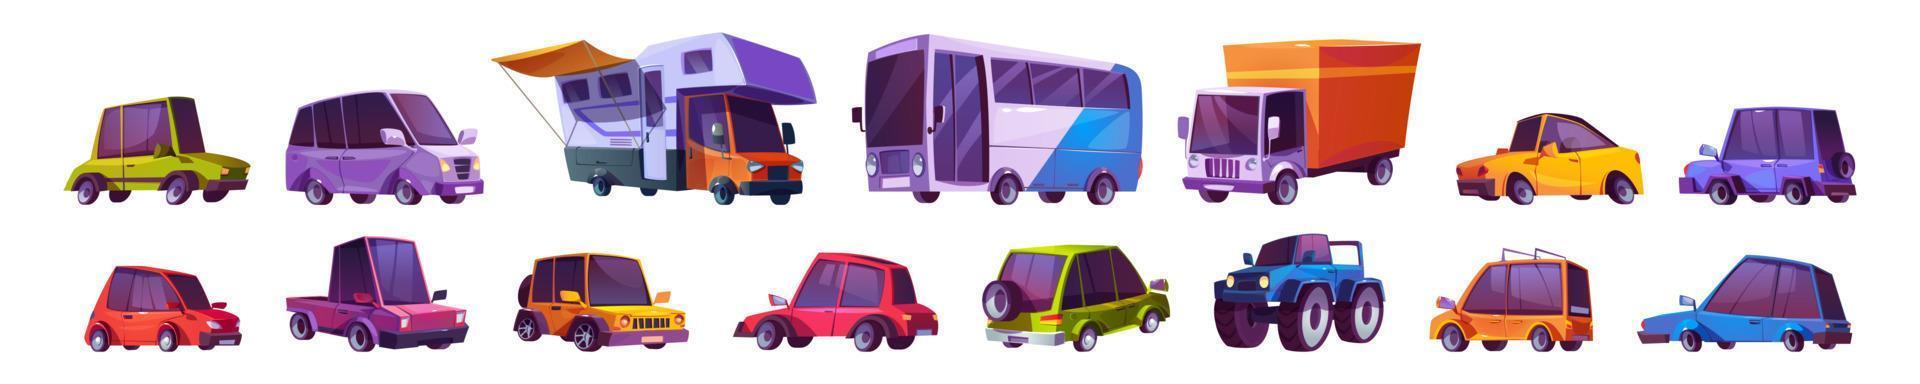 carros de desenhos animados, automóveis, ônibus, caminhão monstro vetor